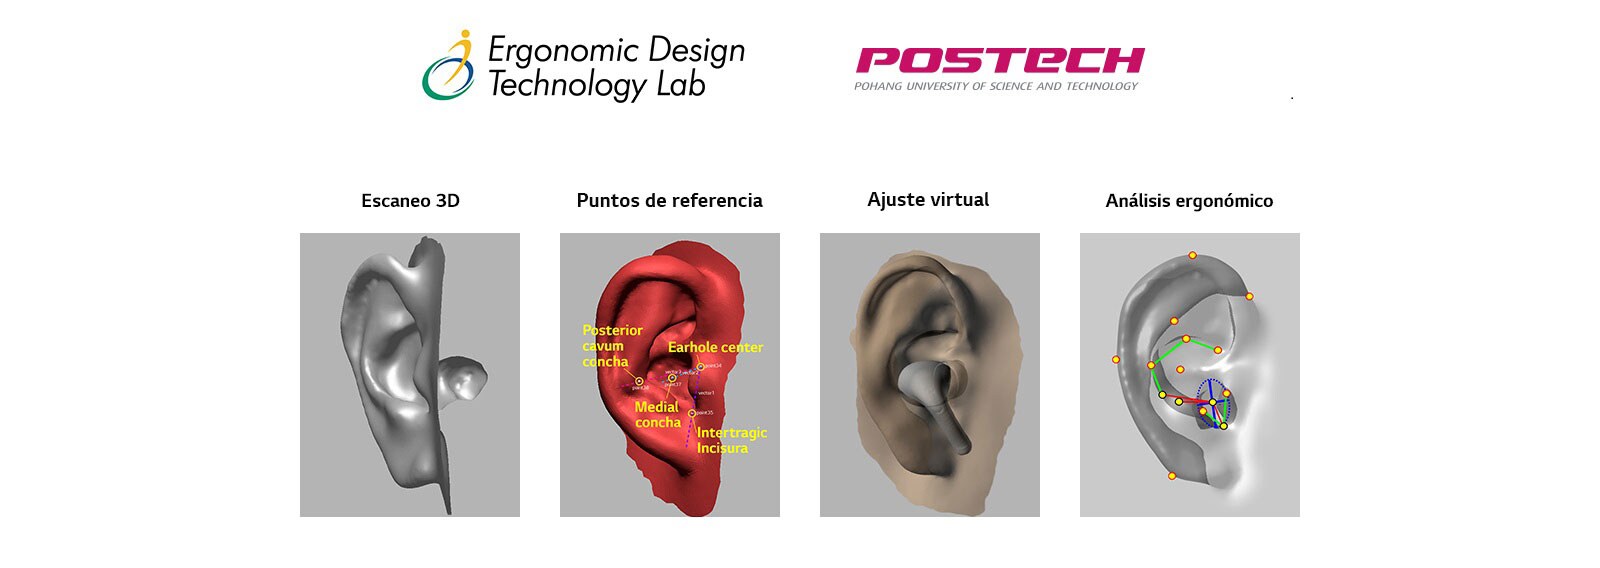 Una imagen en la que se muestra la imagen de modelado de orejas en forma 3D en un total de 4 etapas.